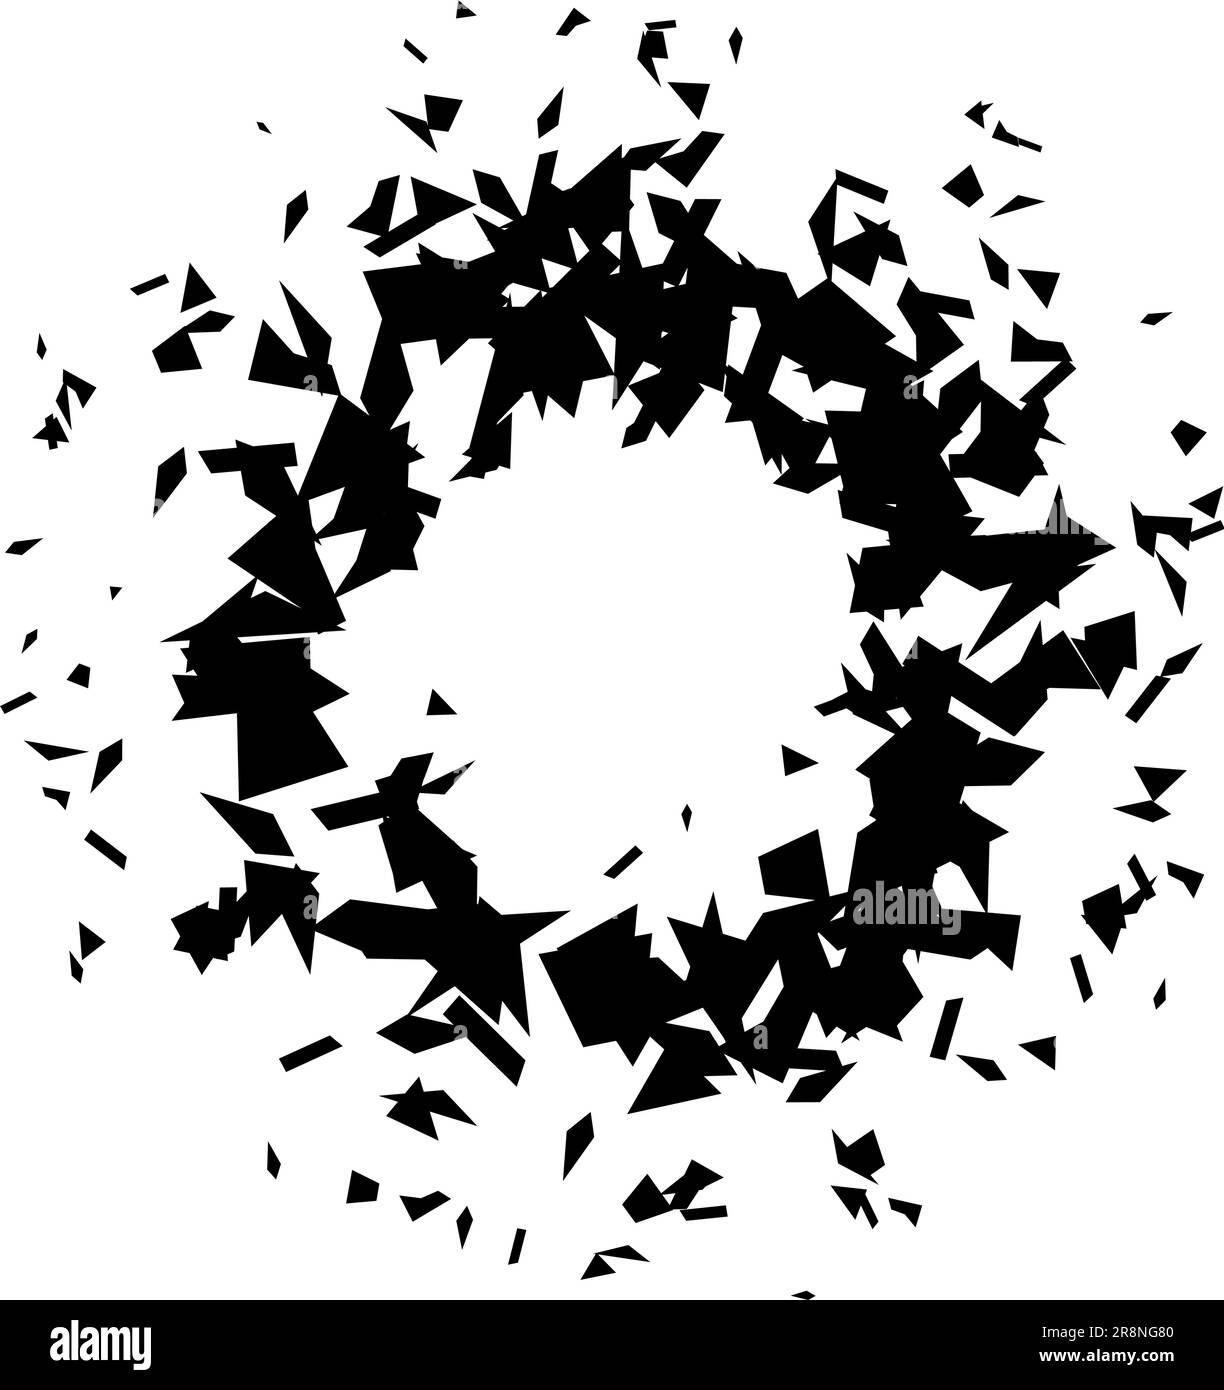 Kreisförmige Trümmer und Sprünge. Schwarze Bruchteile, Flecken, Flecken und Partikel. Abstrakte Explosion und geplatztes Texturelement. Darstellung des Vektorrahmens Stock Vektor